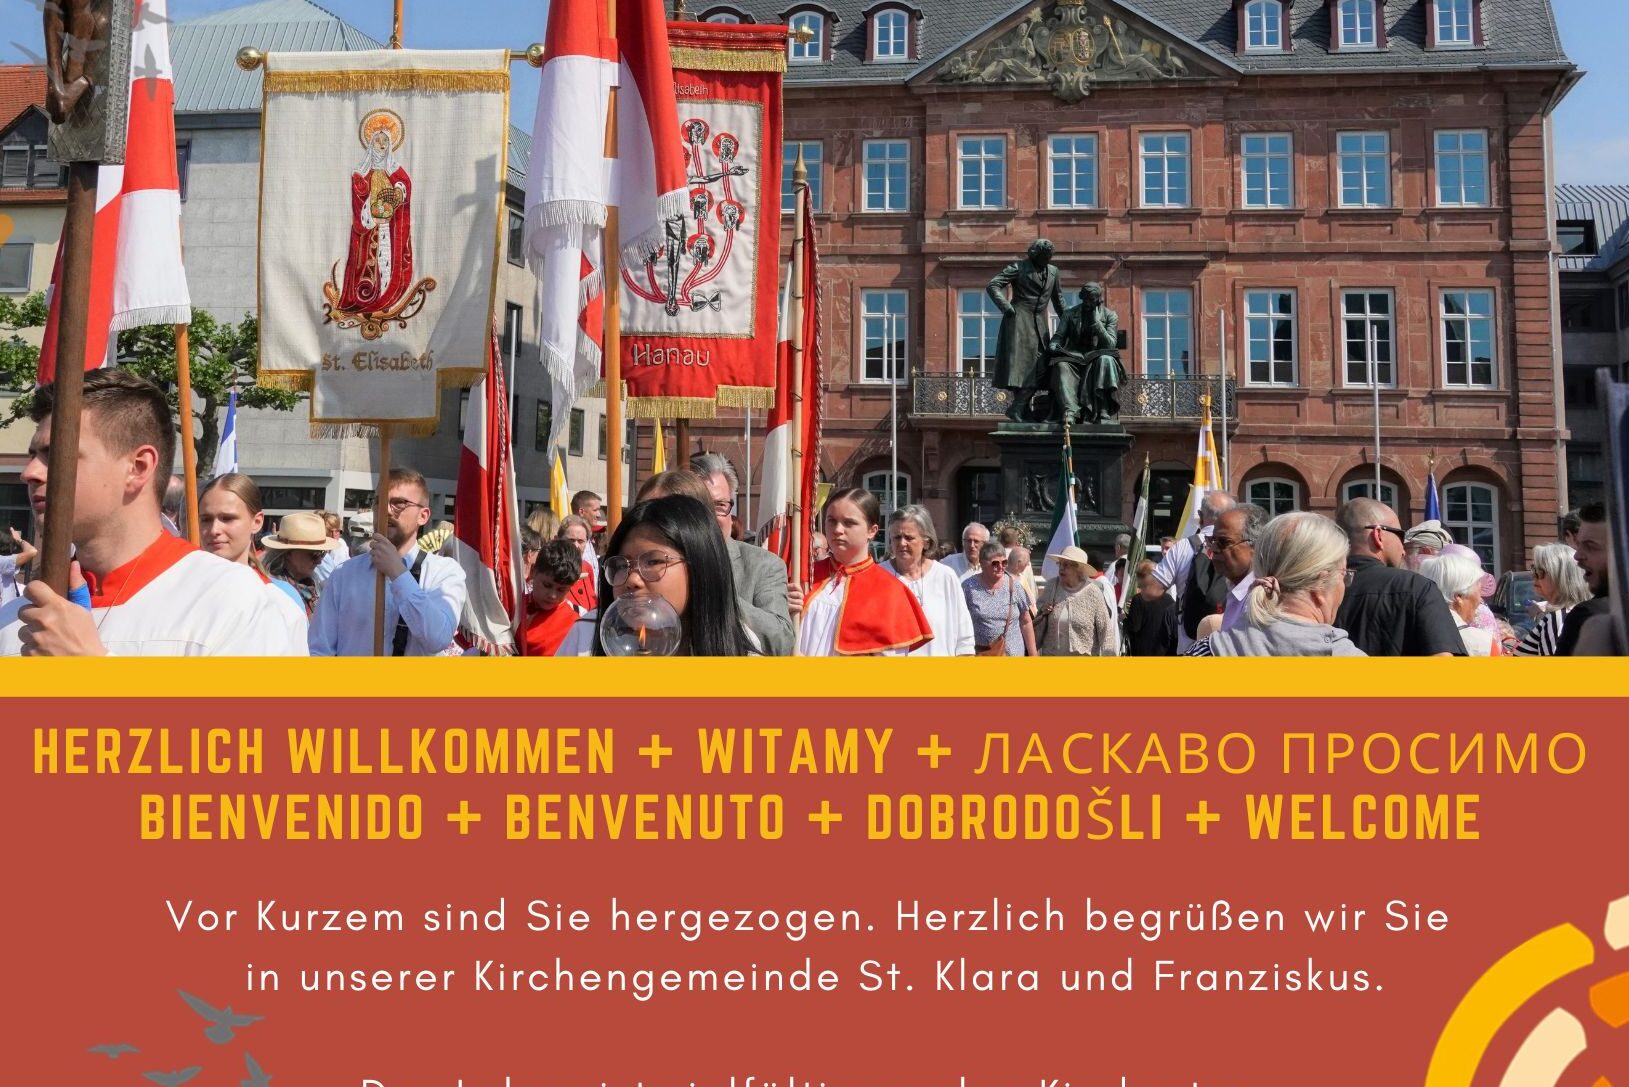 Featured image for “Herzlich willkommen + Welcome+ Benvenuto Bienvenido + Witamy + Dobro došli + ласкаво просимо”